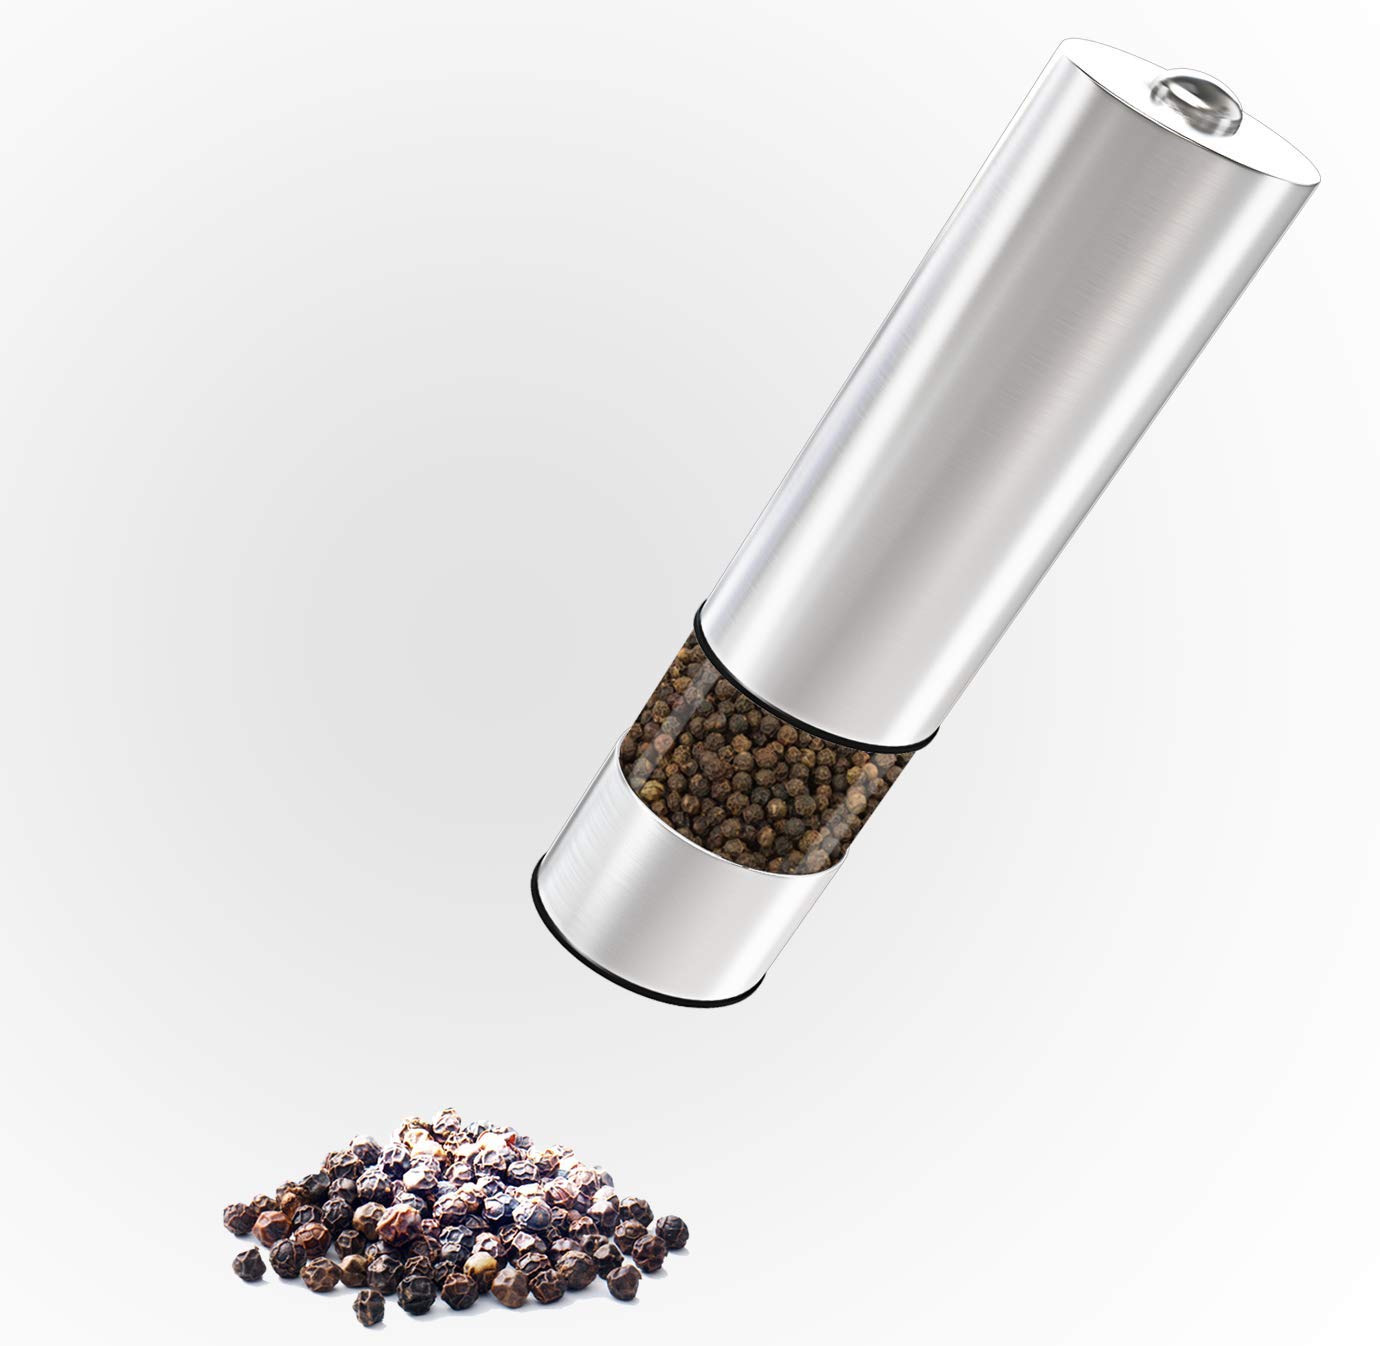 Electric Pepper Grinder or Salt Grinder – Battery Operated Automatic Spice Grinder - Pepper Mill with Light and Adjustable Ceramic Grinder by Velvastar